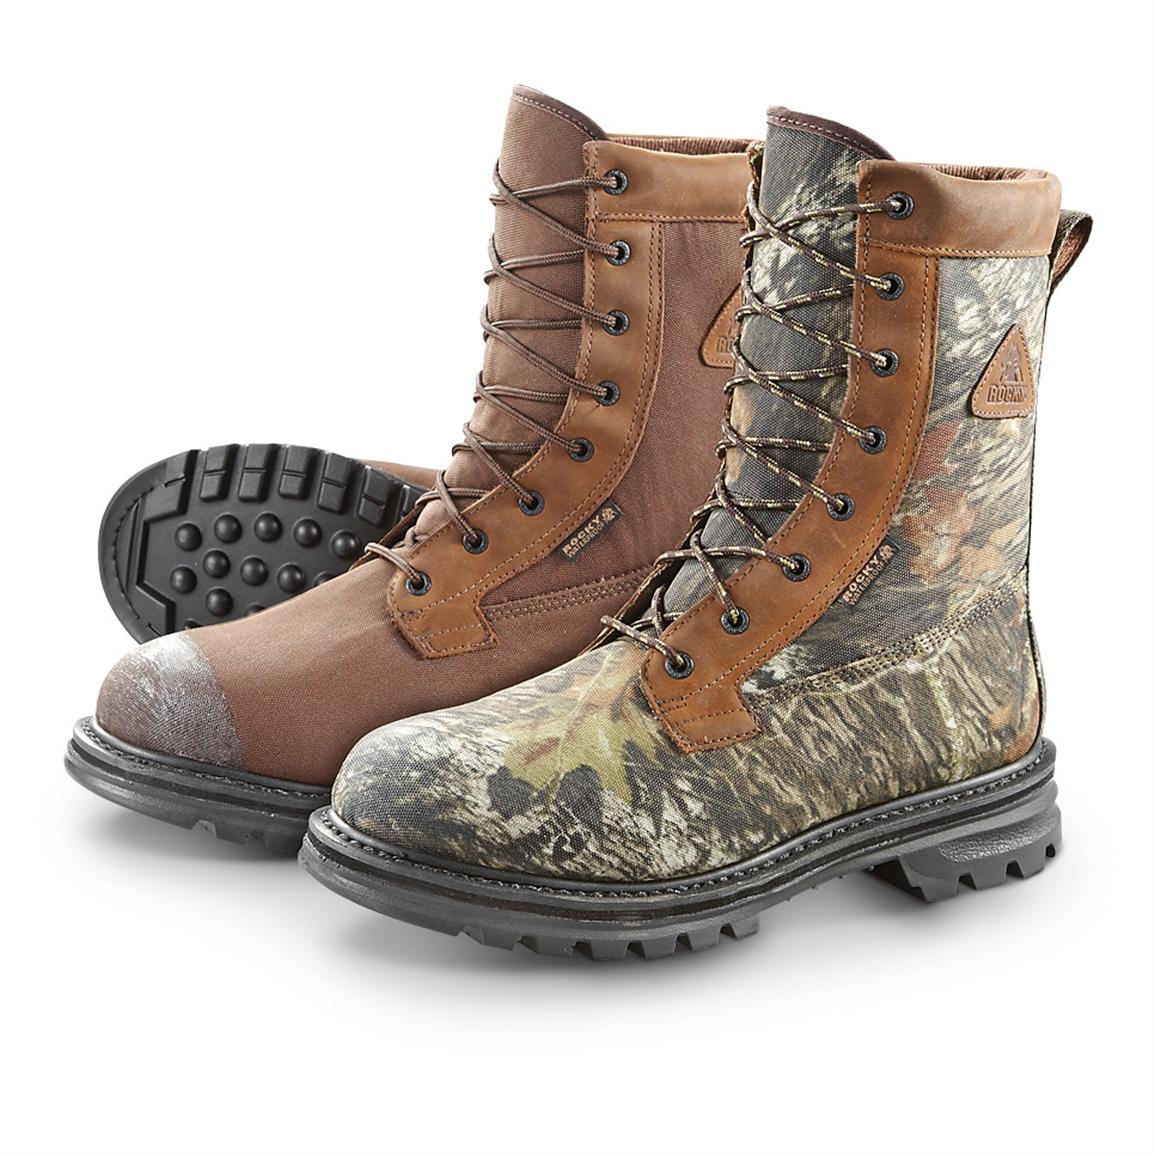 cornstalker boots